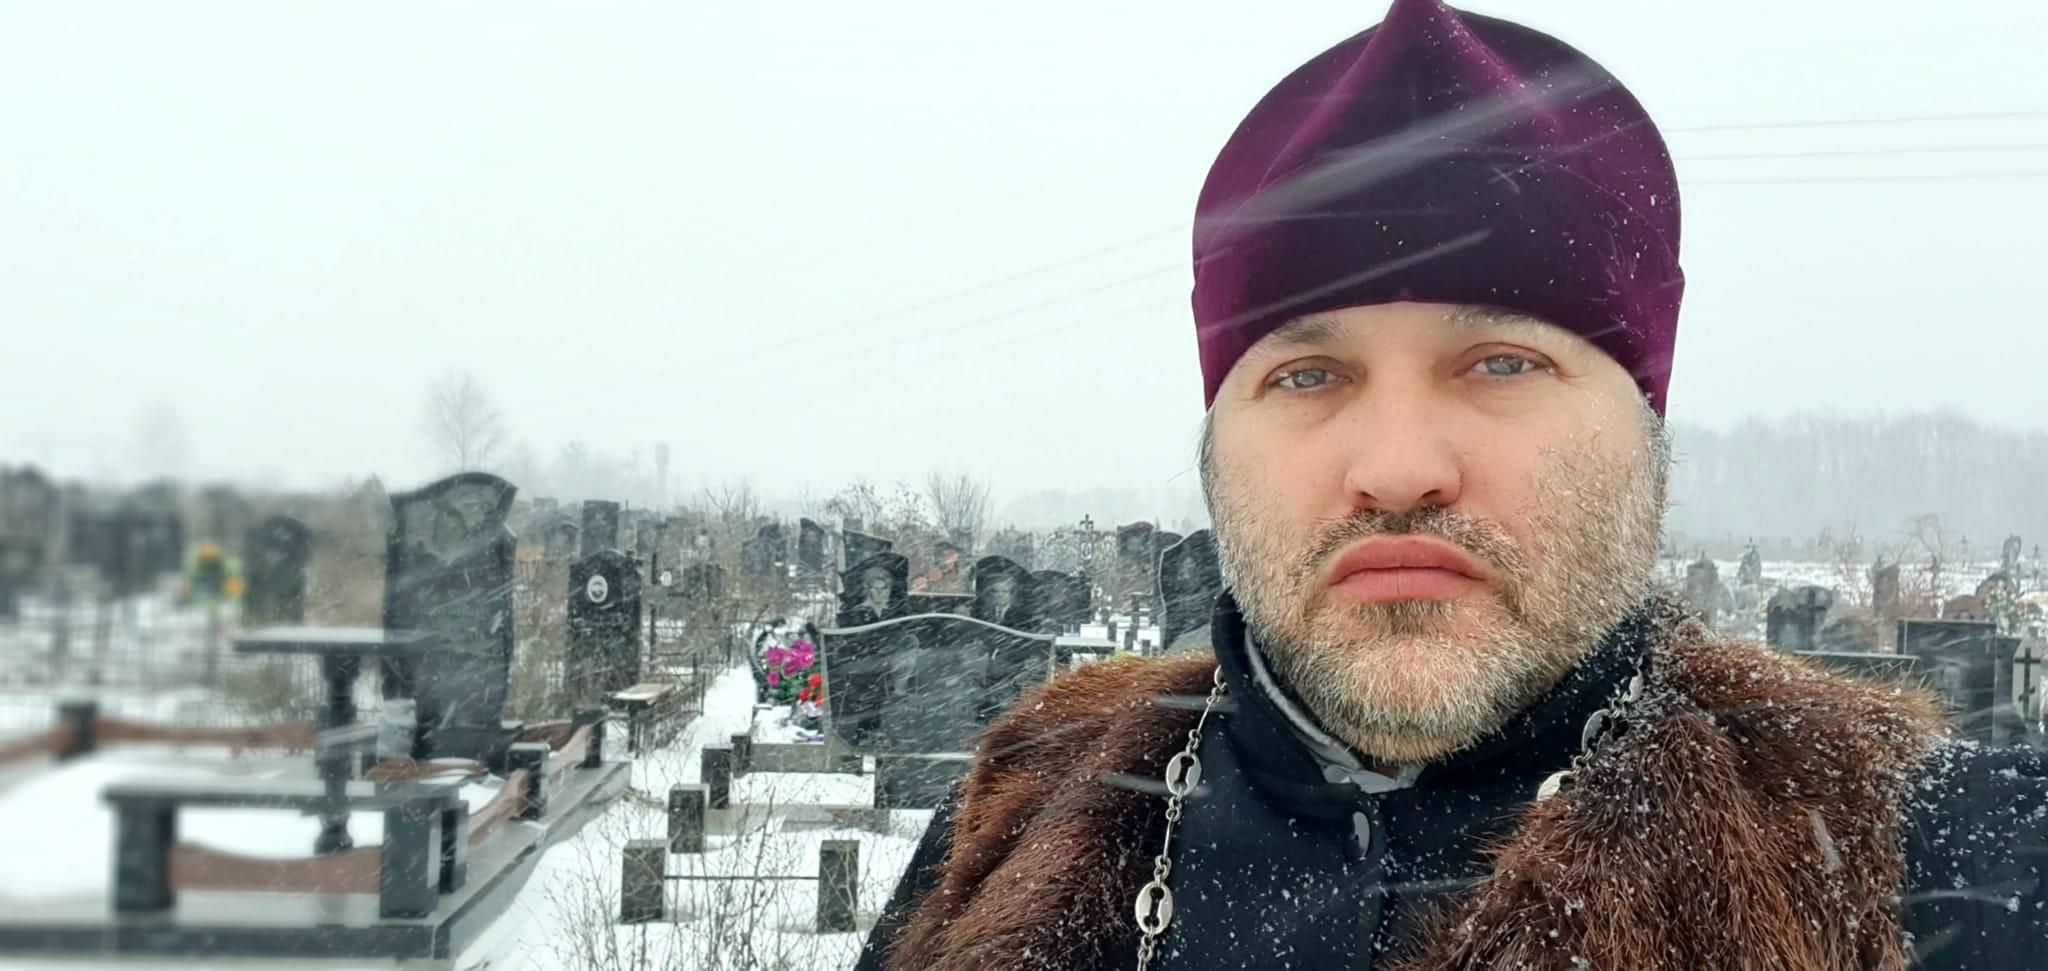 Хоронить вас в такую погоду приятного мало, – священник из Полтавы цинично предостерег украинцев